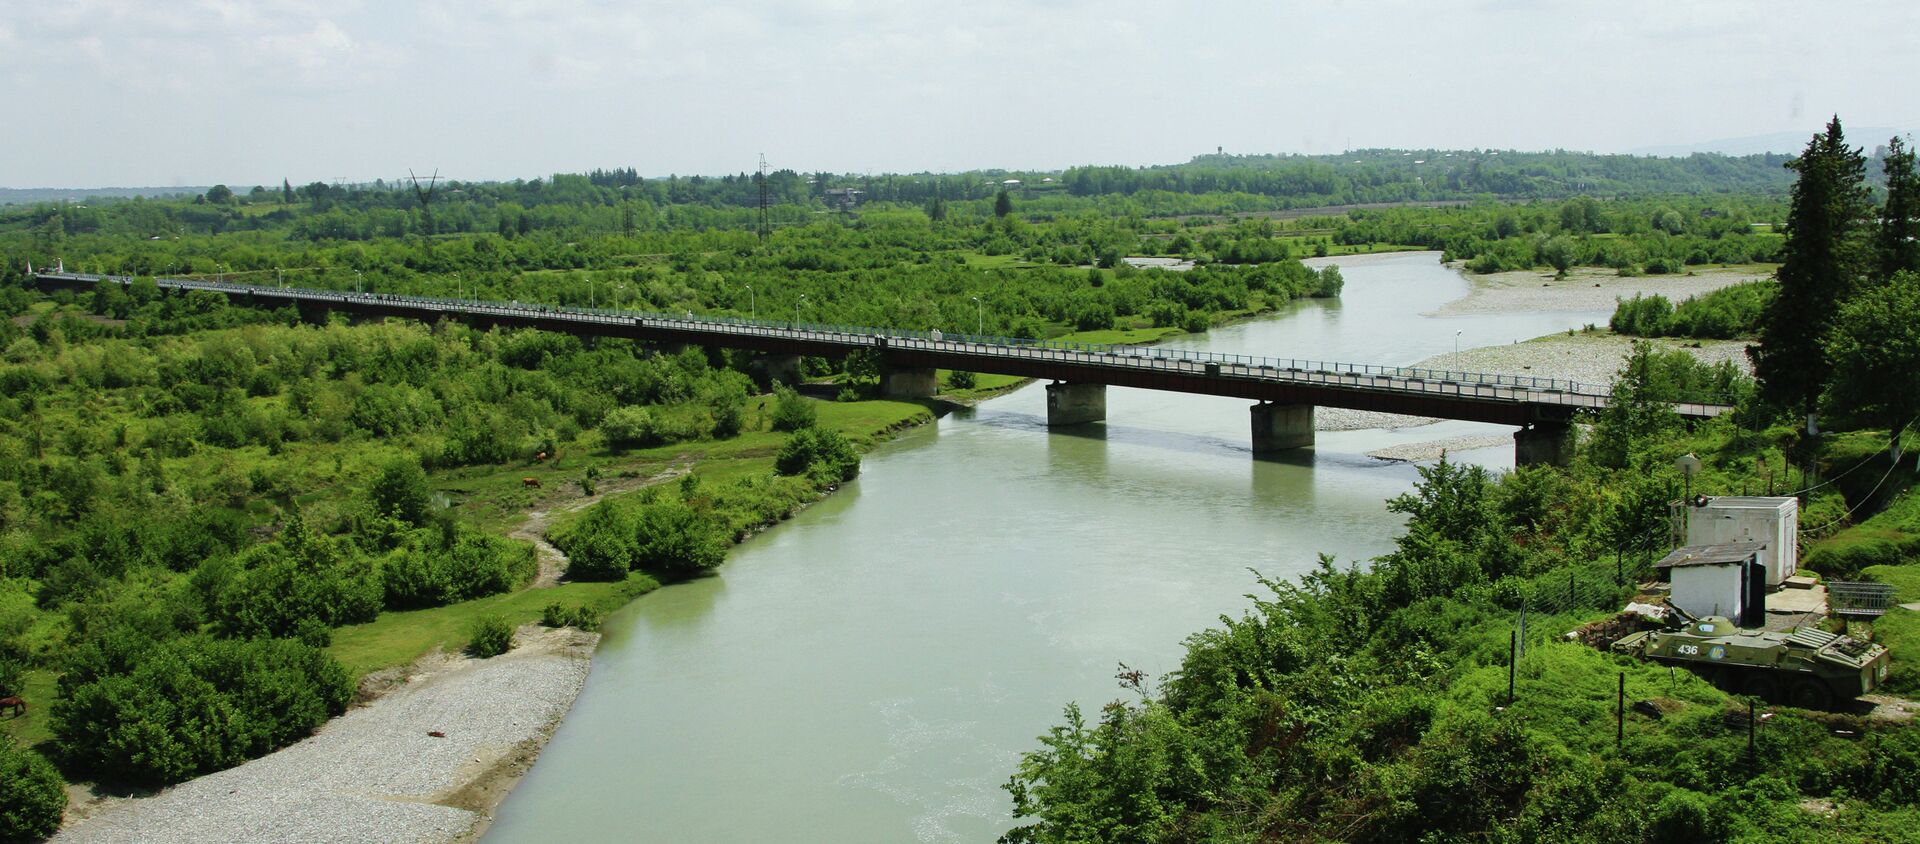 Мост на реке Ингур, соединяющий Грузию с Абхазией. Архивное фото. - Sputnik Аҧсны, 1920, 08.04.2021